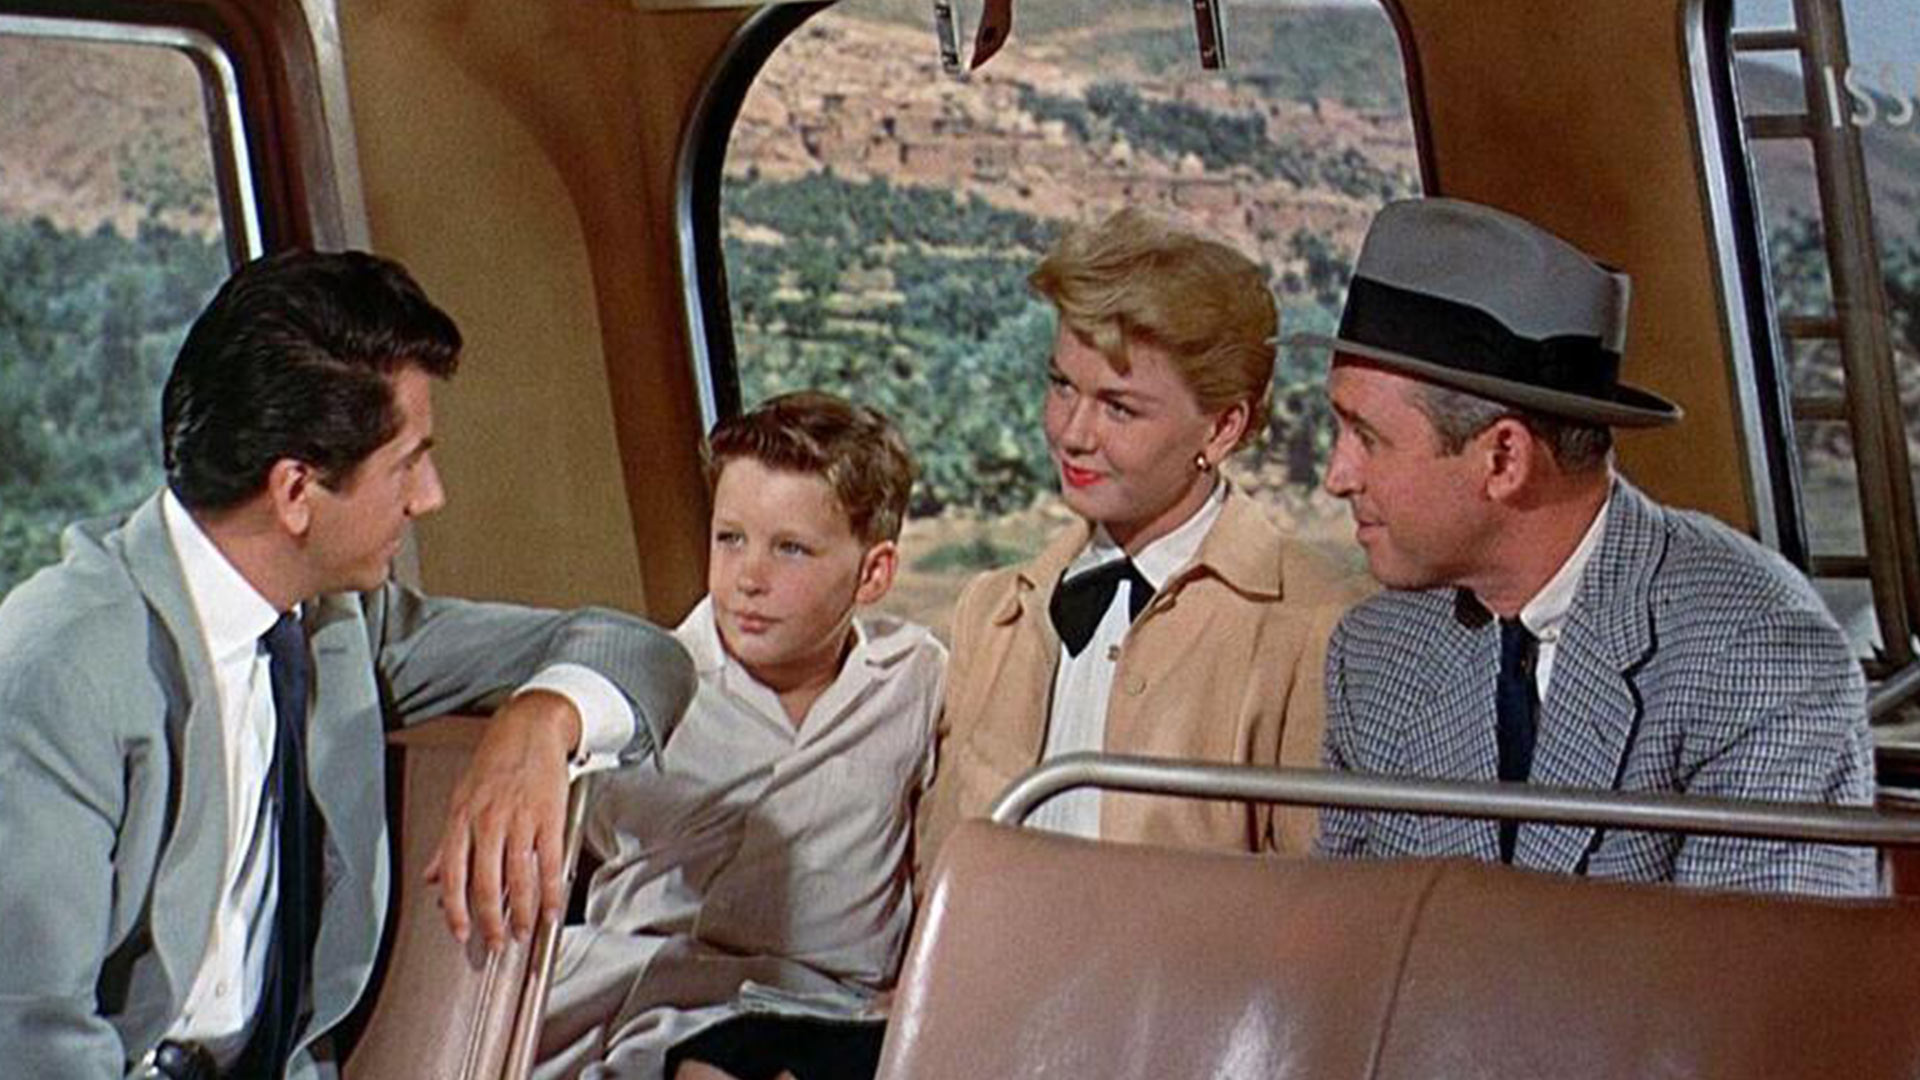 جیمز استوارت به همراه خانواده اش در اتوبوس در فیلم The Man Who Knew Too Much